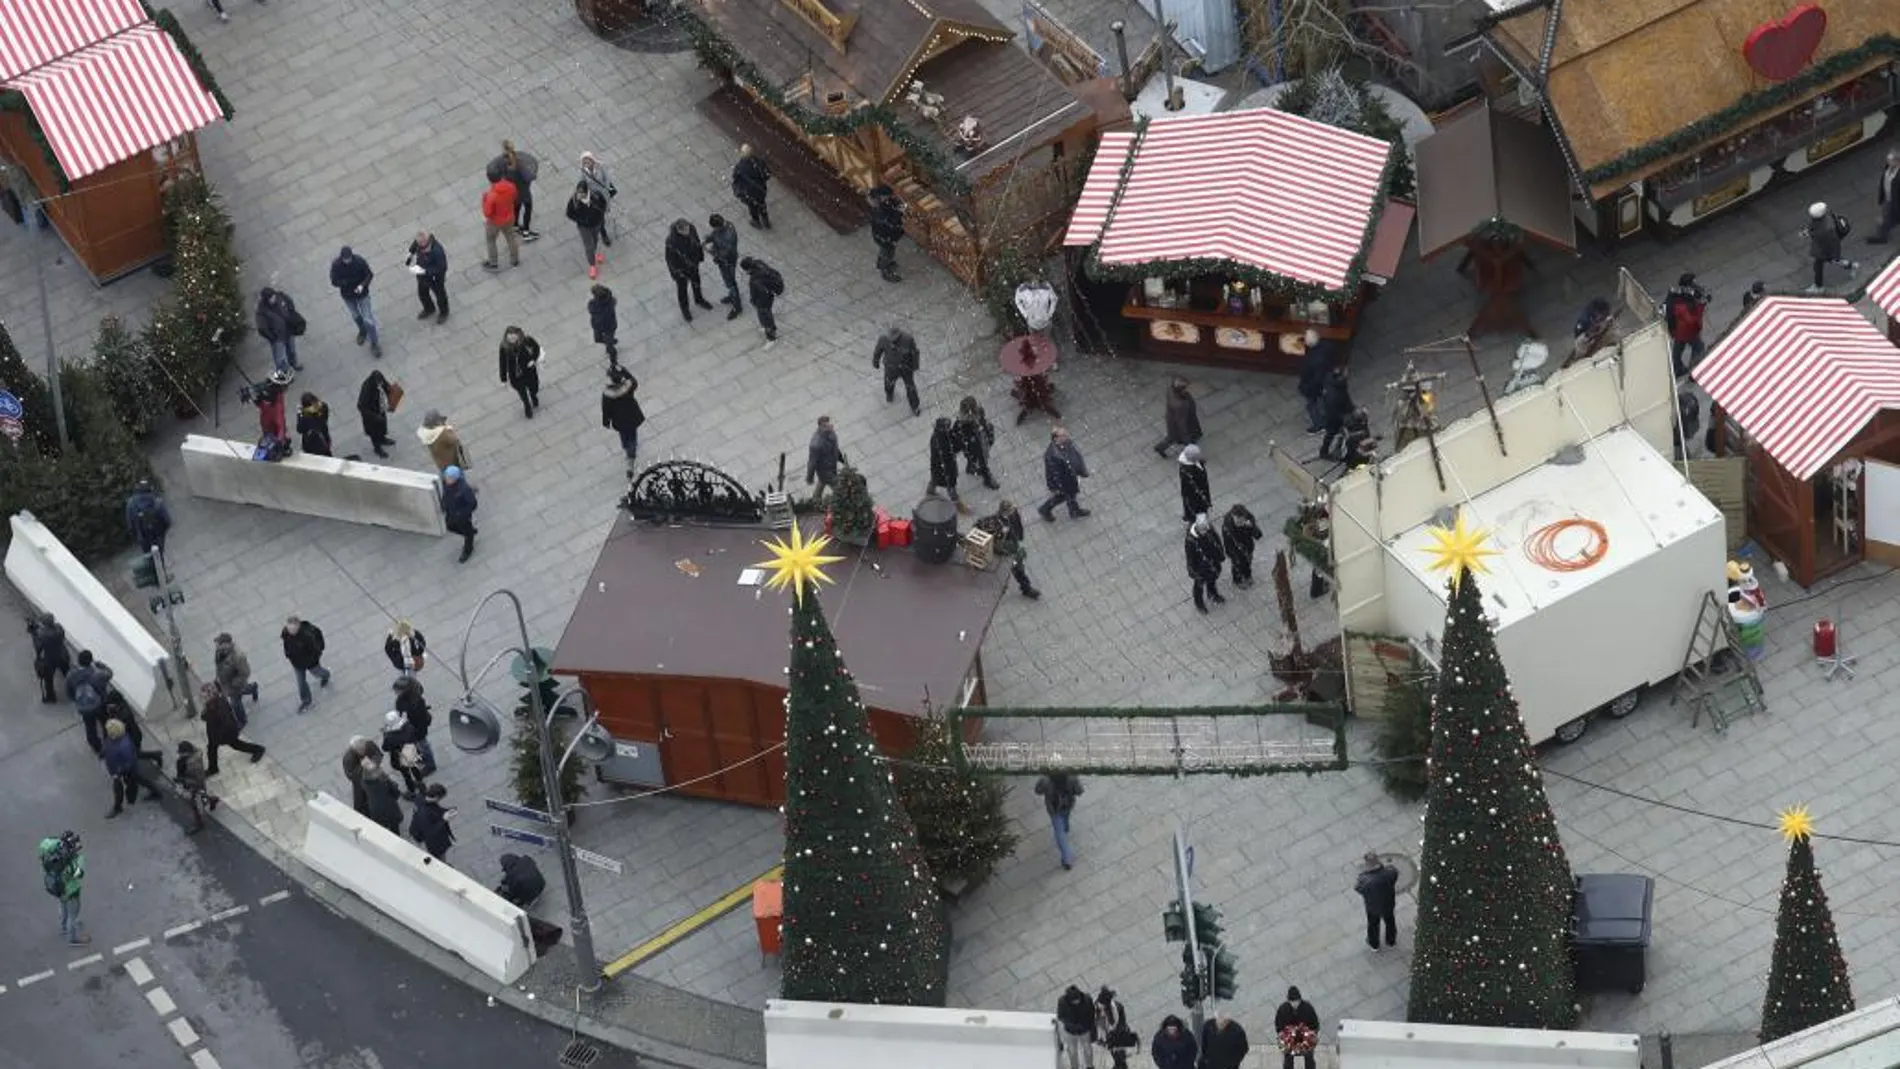 Vista aérea del mercado navideño de la Breitscheidplatz en Berlín, Alemania, después su reapertura hoy, 22 de diciembre de 2016.